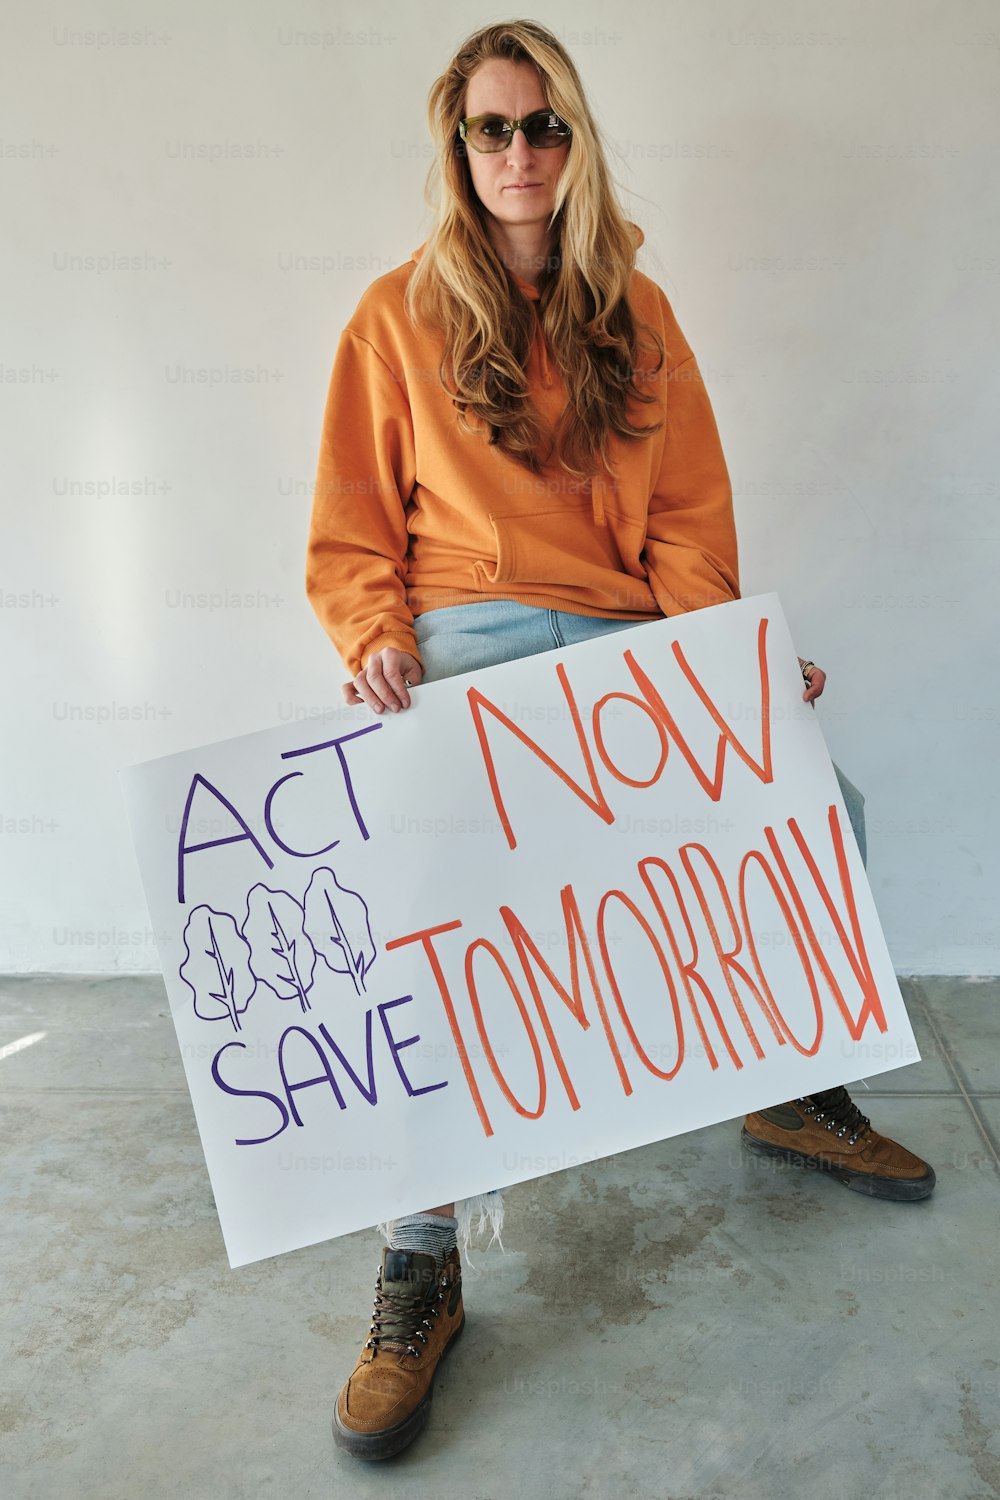 Una mujer sosteniendo un cartel que dice Actúa ahora, salva mañana